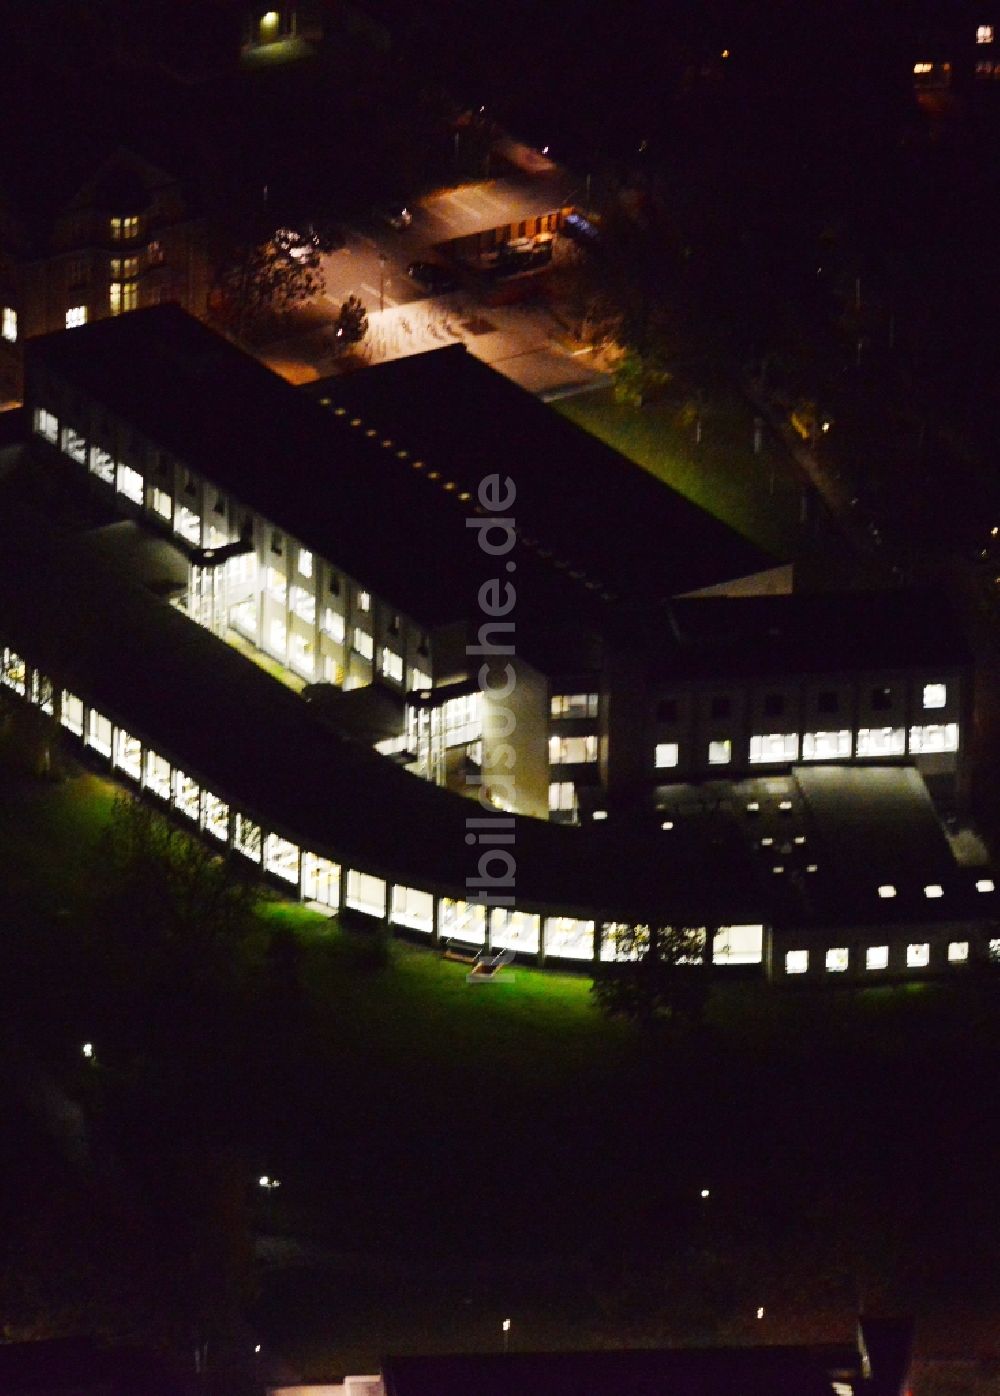 Nacht-Luftaufnahme Berlin Dahlem - Nachtluftbild der Bibliothek des Fachbereichs Rechtswissenschaft der Freien Universität in Berlin